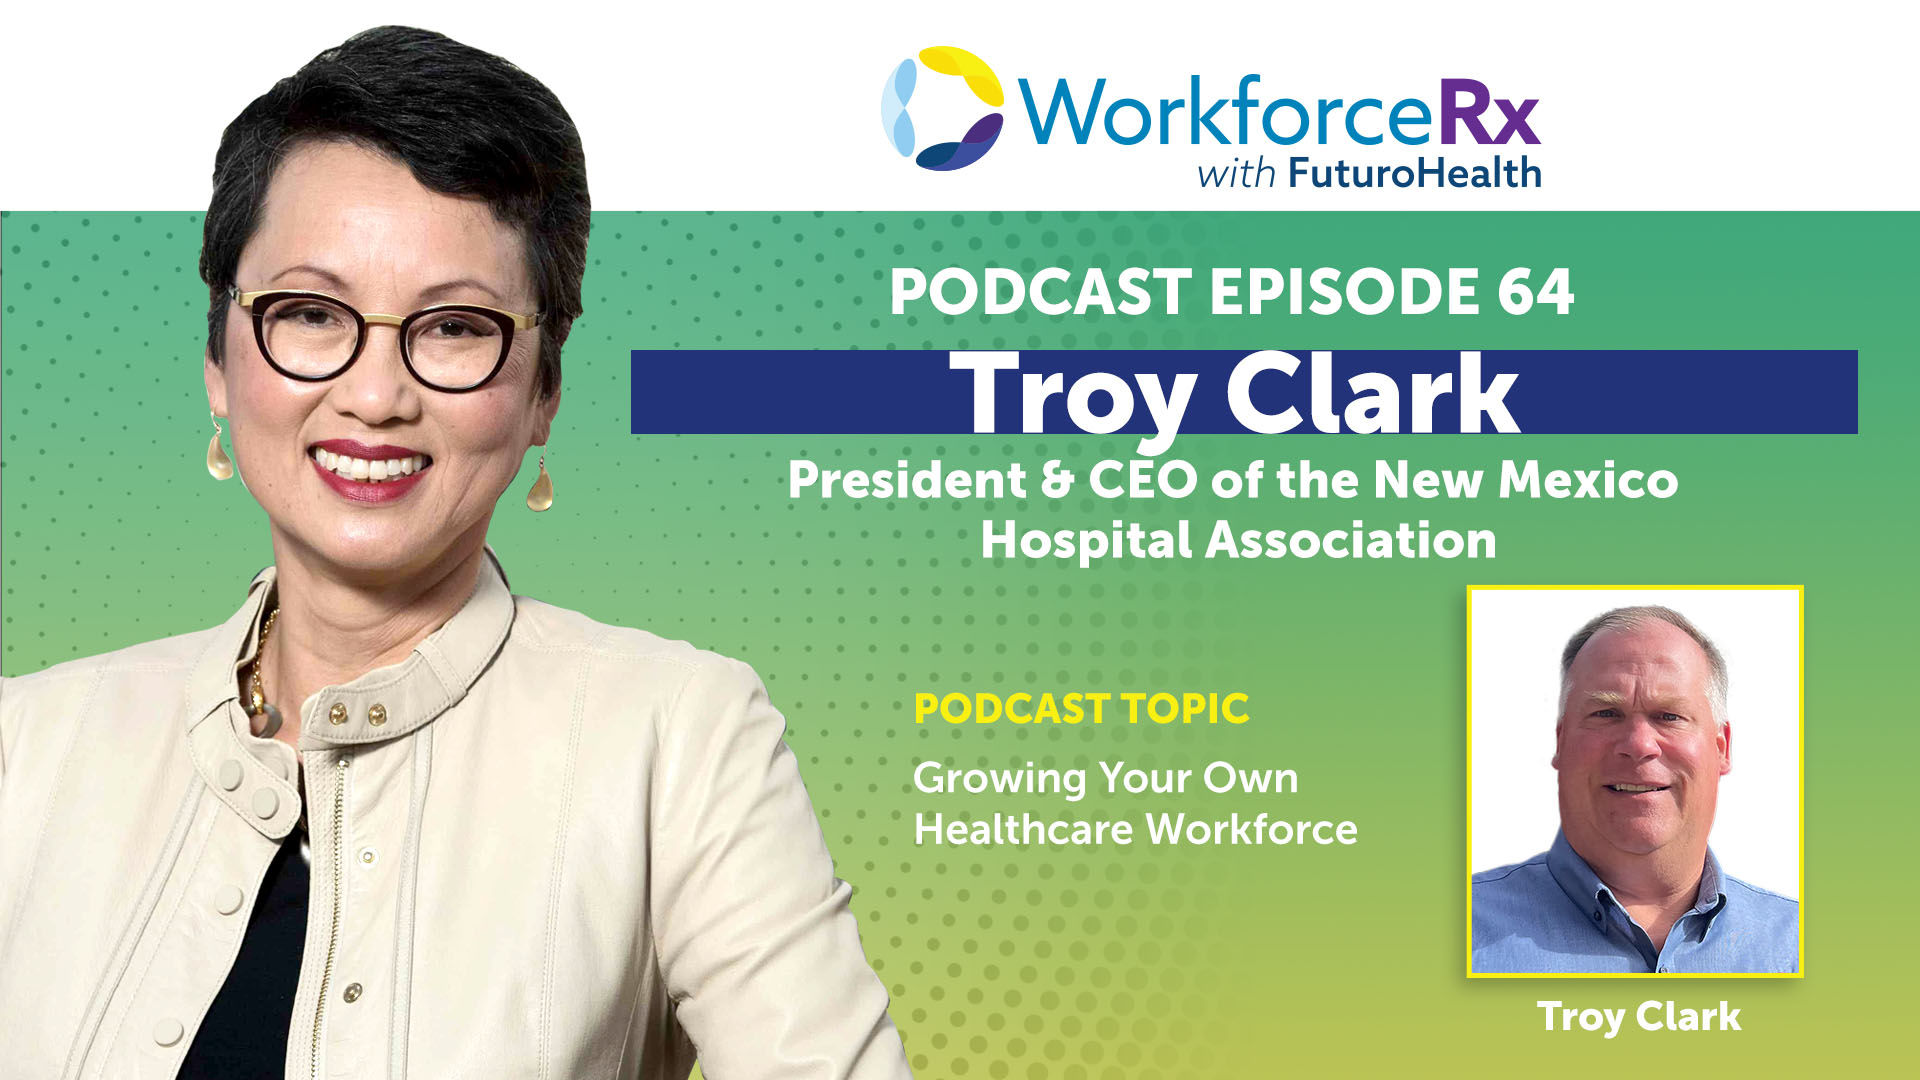 EP64 WorkforceRx Podcast Troy Clark